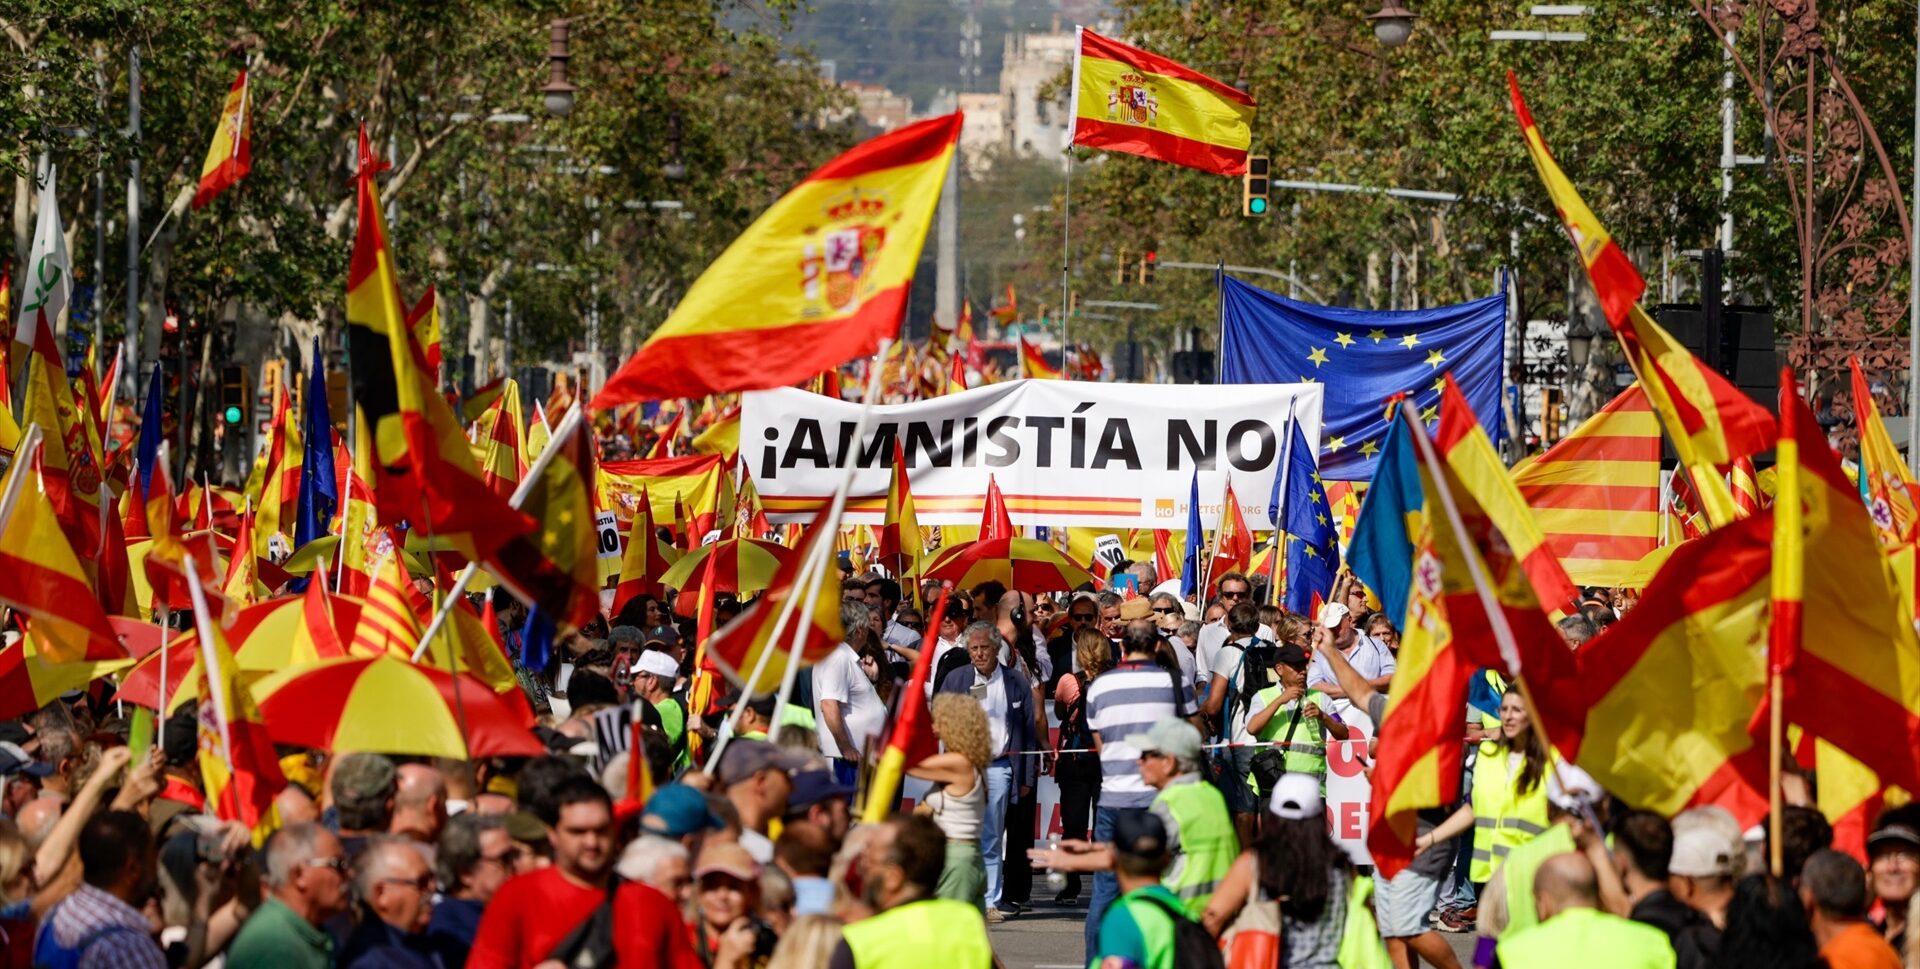 Feijóo y Abascal fracasan en su estrategia de tensión callejera en contra de la amnistía